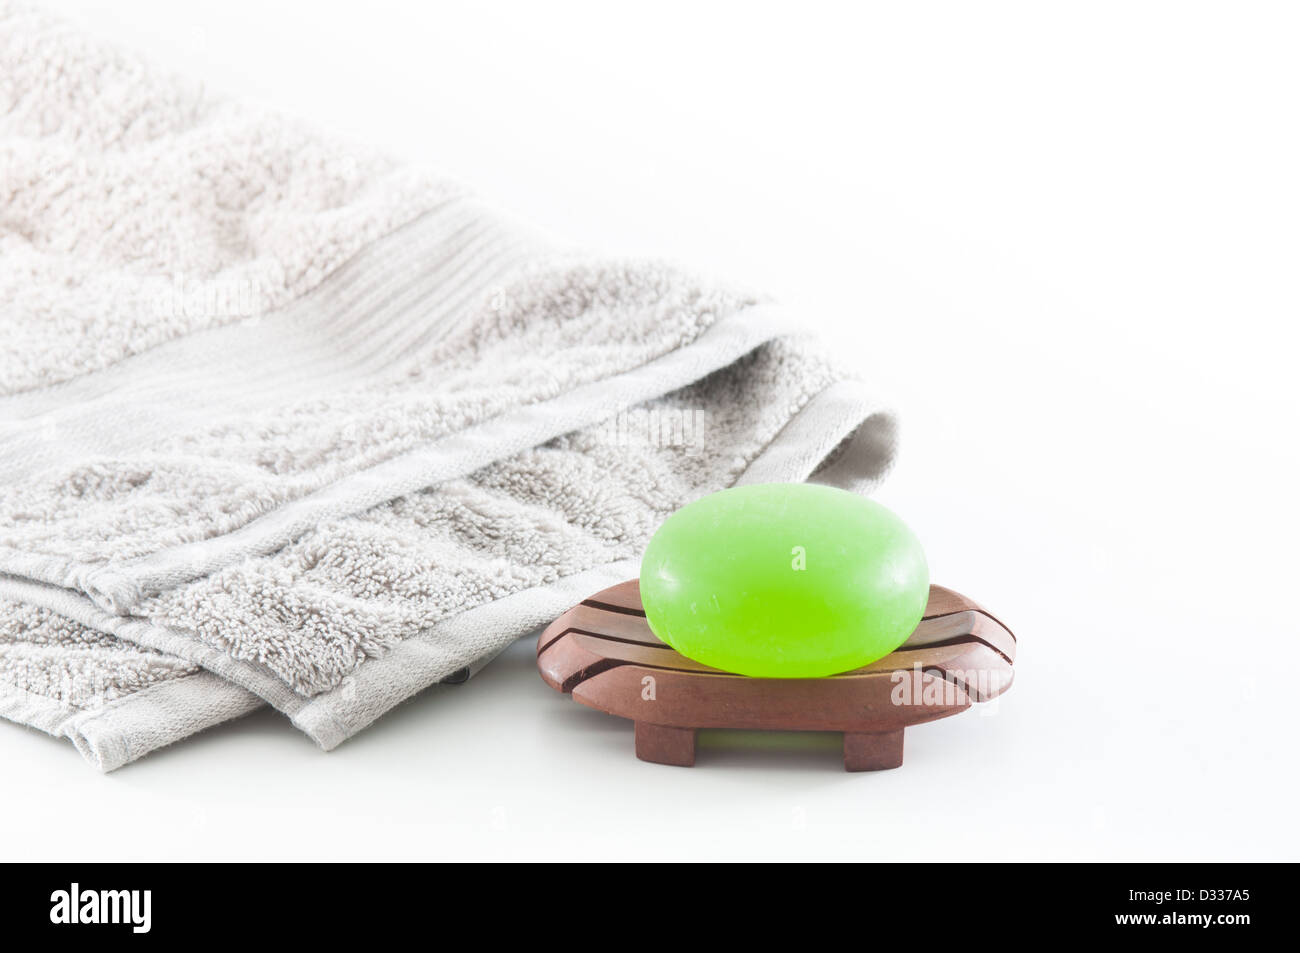 Beau vert profond savon aloe vera sur un fond blanc avec une serviette gris moelleux dans l'arrière-plan Banque D'Images